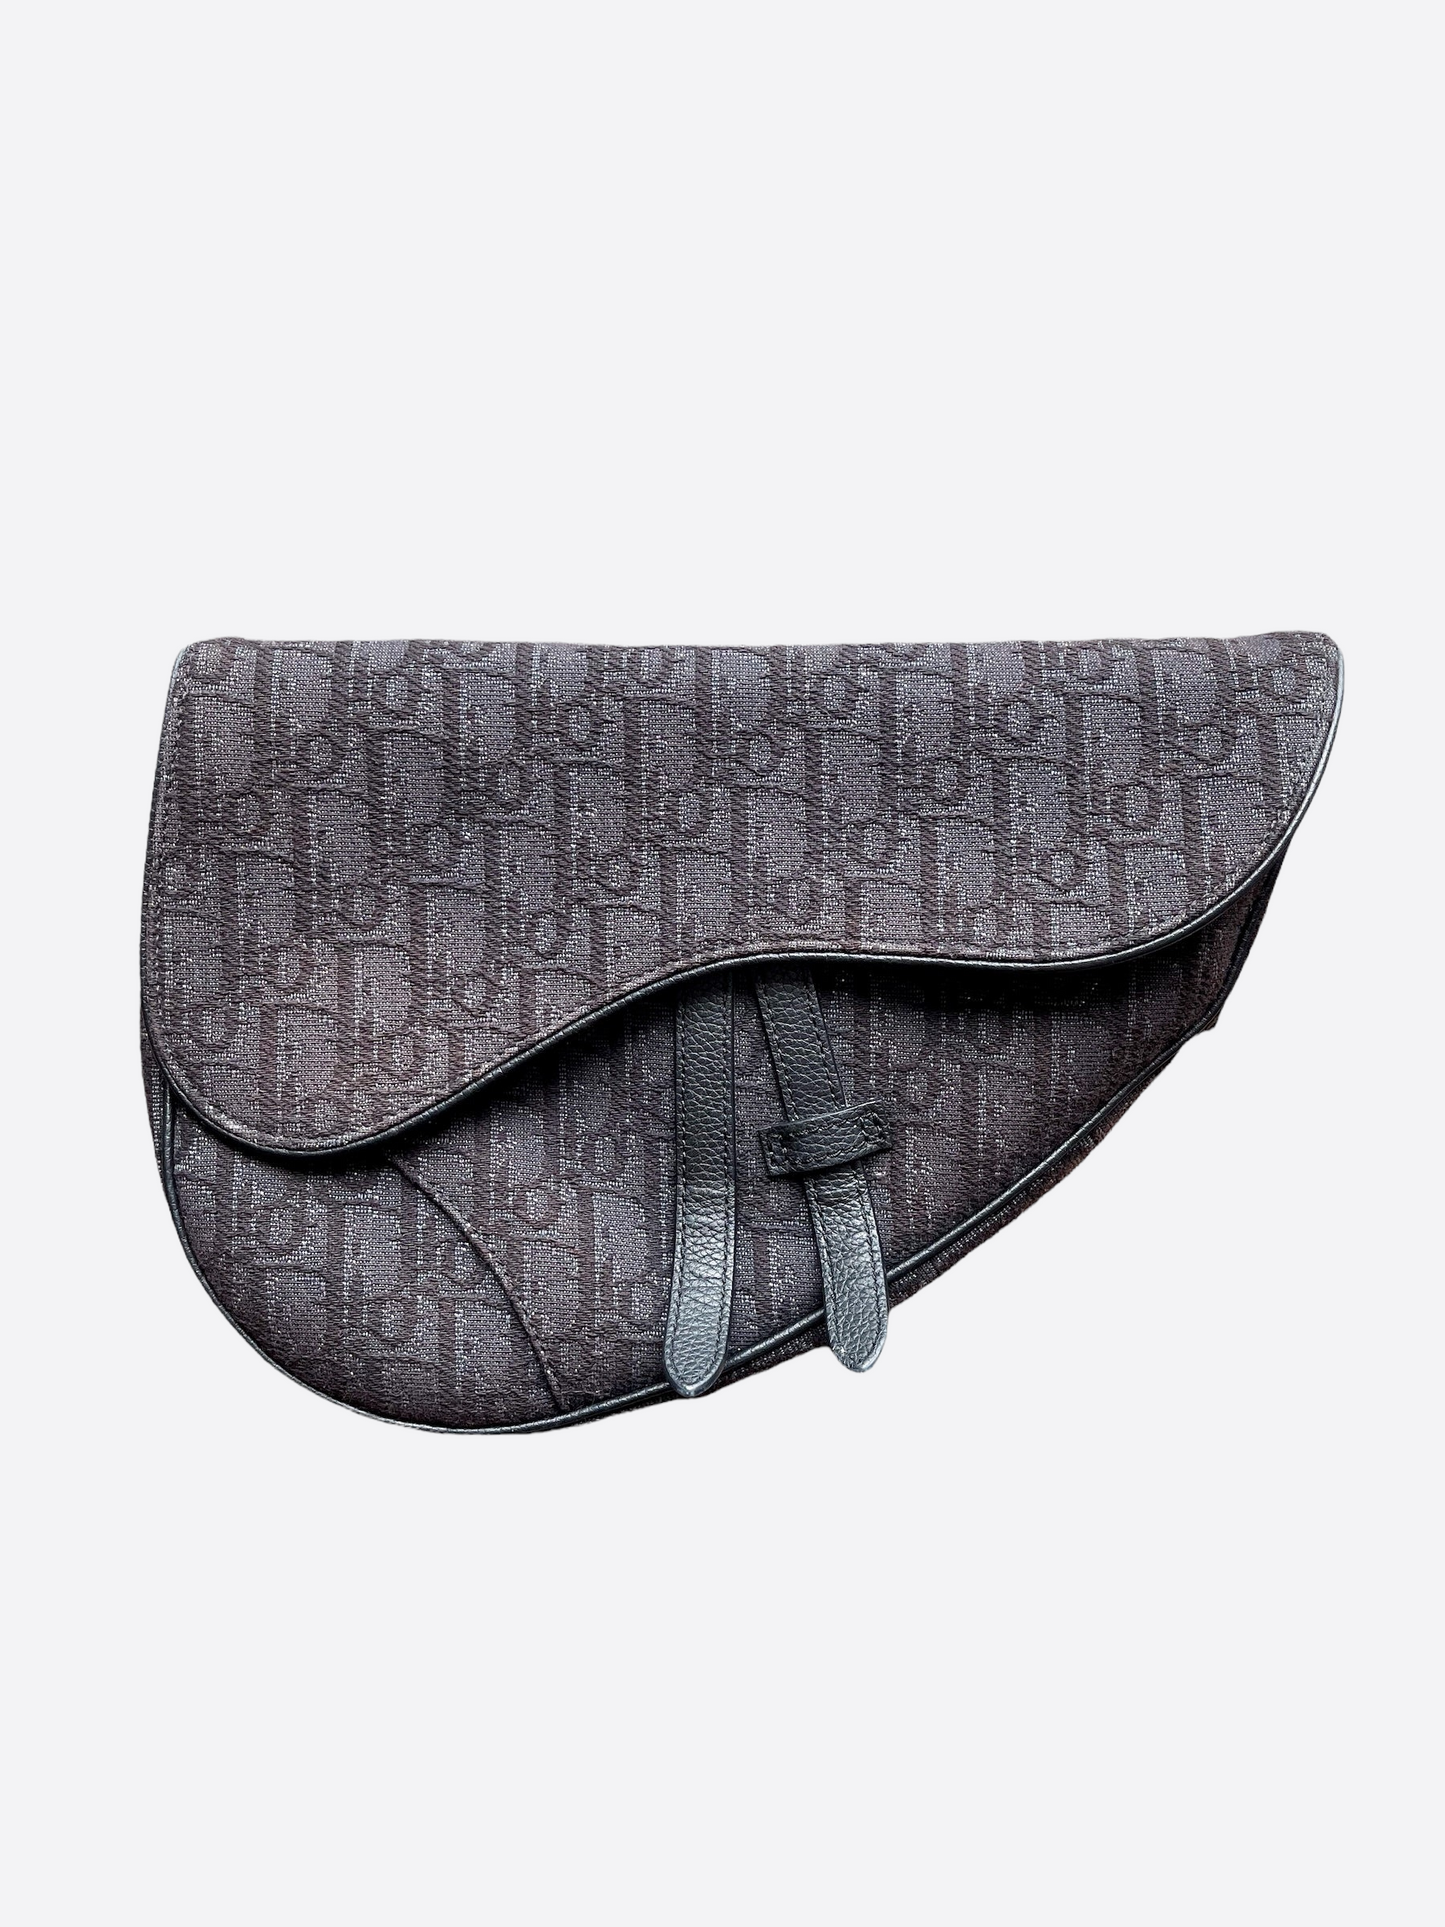 Dior Oblique Black Saddle Bag